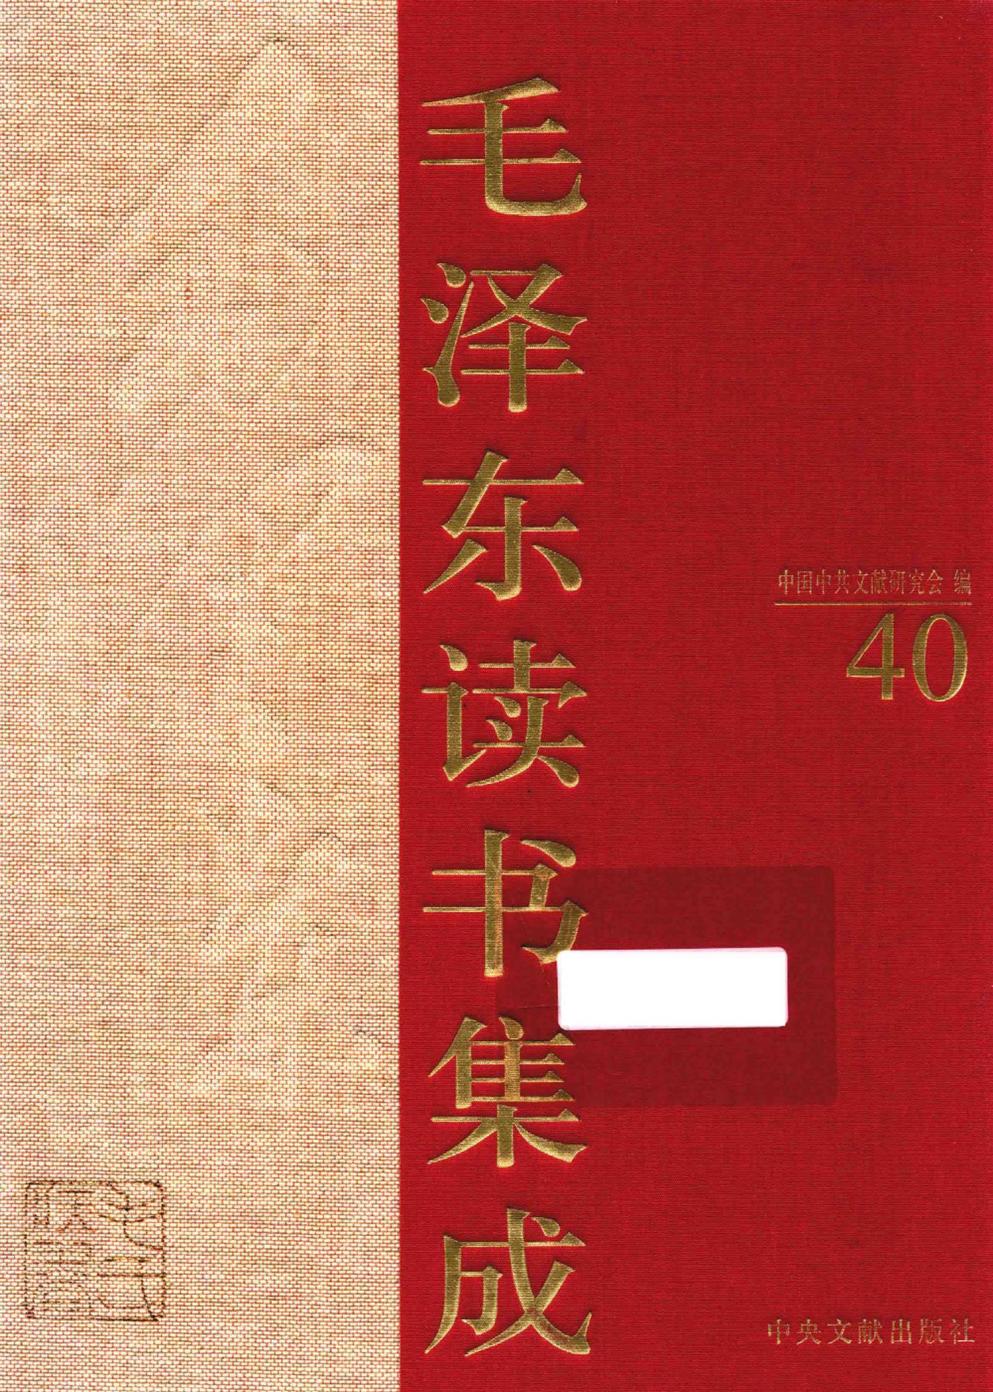 毛泽东读书集成（第40卷）-1